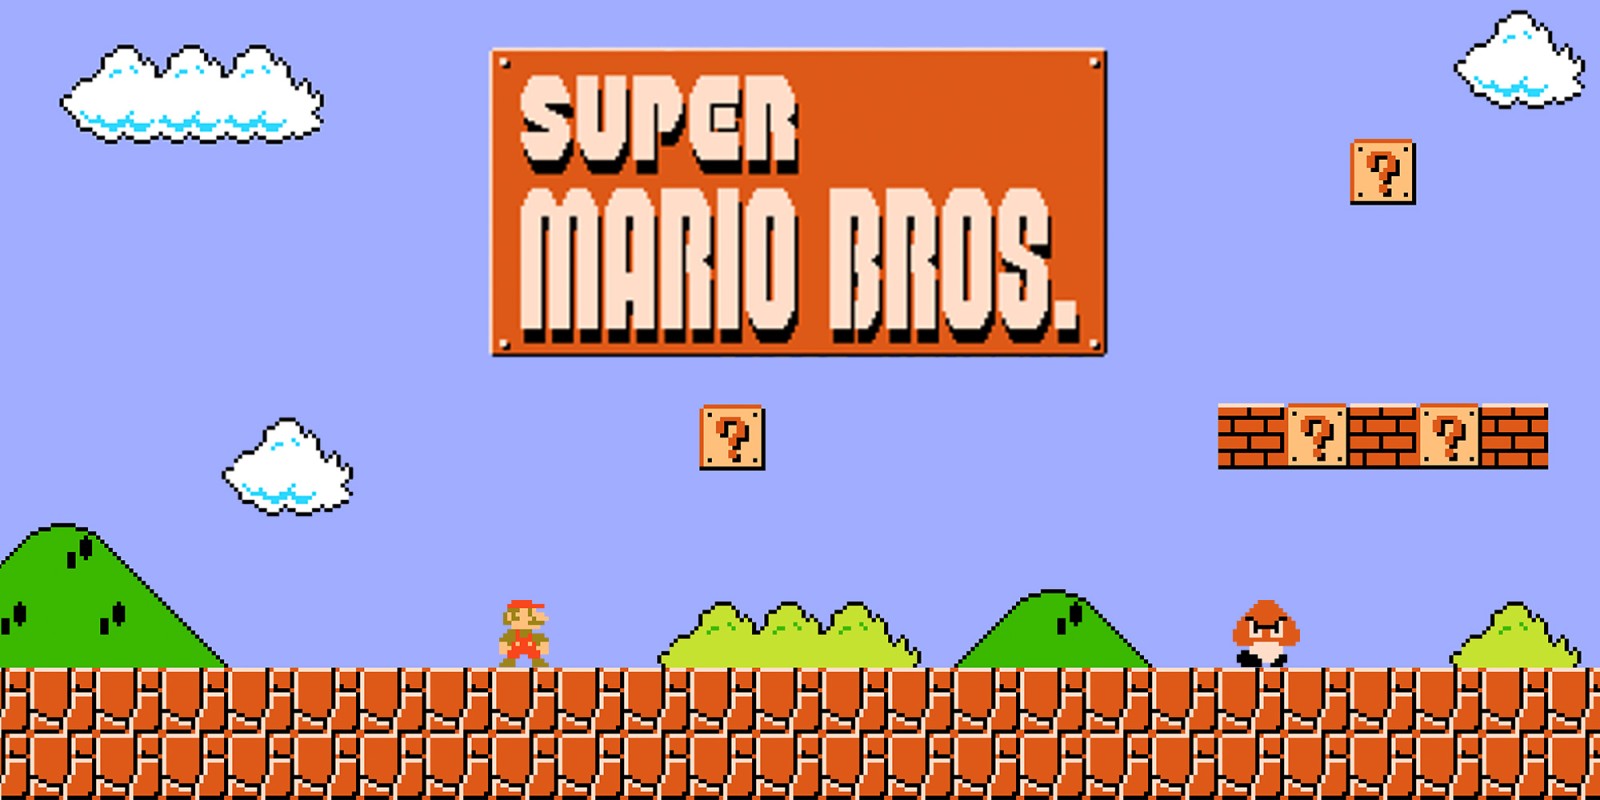 Play Super Mario Game NES